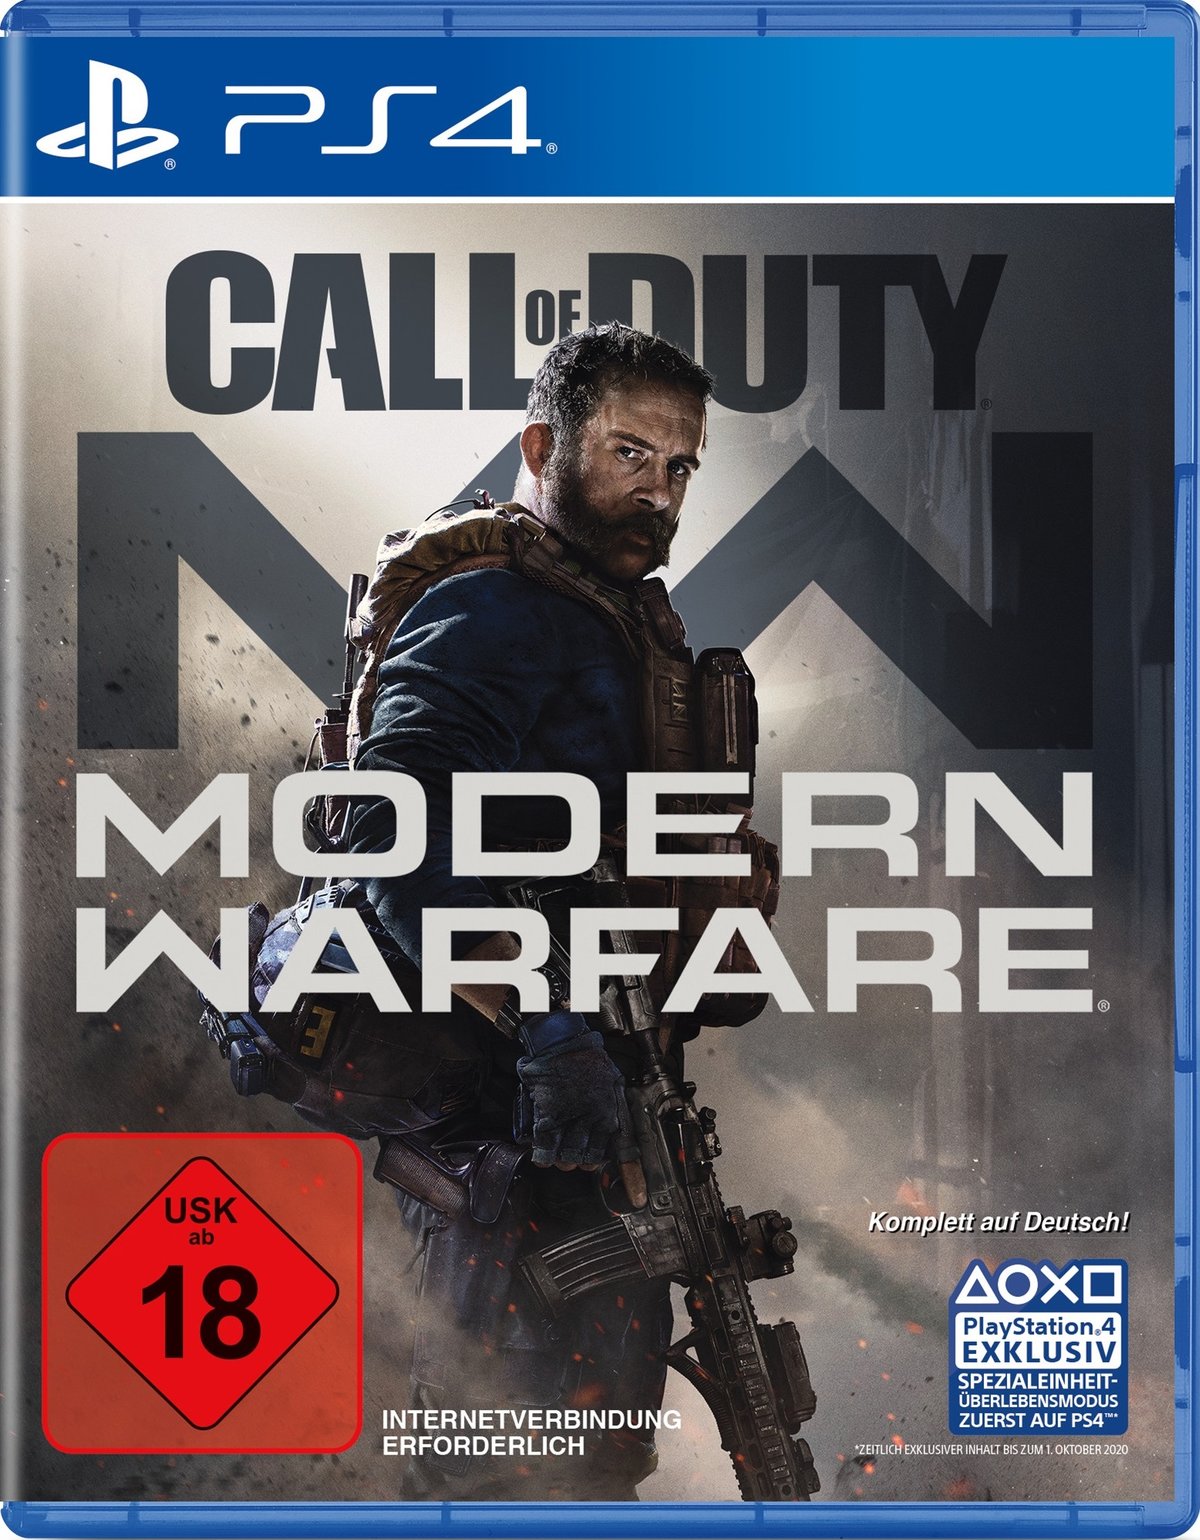 Call of Duty 16: Modern Warfare PS4 von Activ. Blizzard